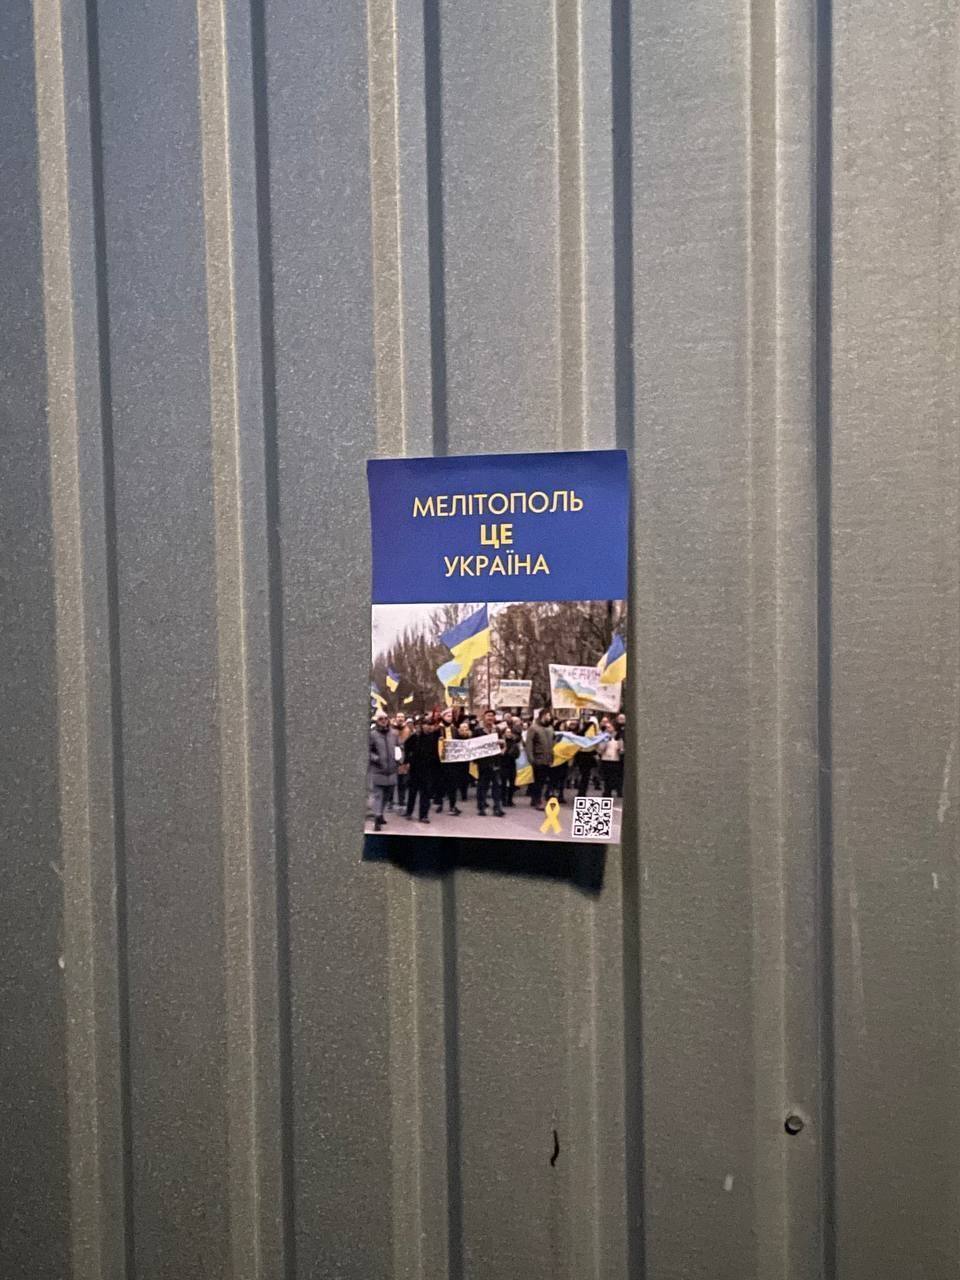 Оккупанты превратили Мелитополь в "тюрьму", но украинские патриоты не сдаются: в сети показали фото смелой акции